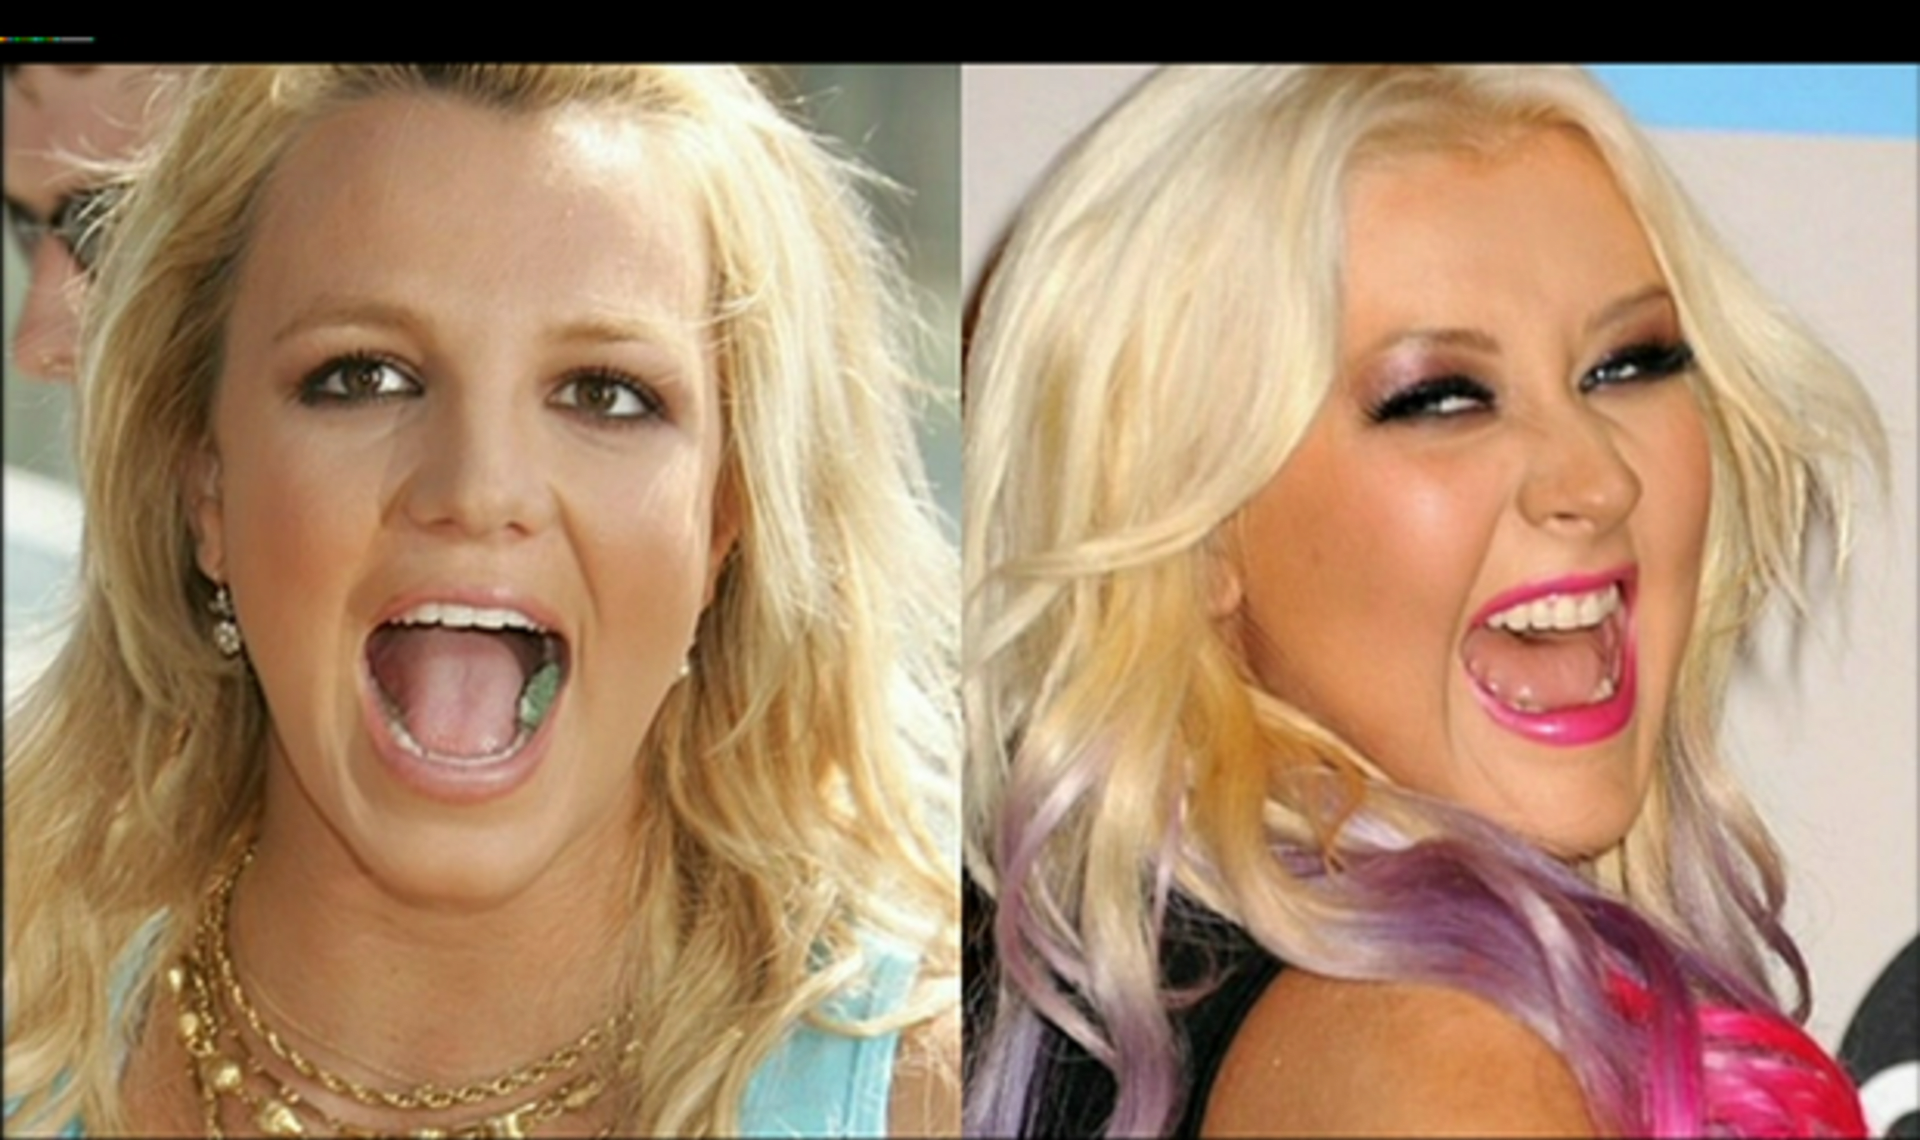 Kdo se směje lépe? Britney nebo Christina?